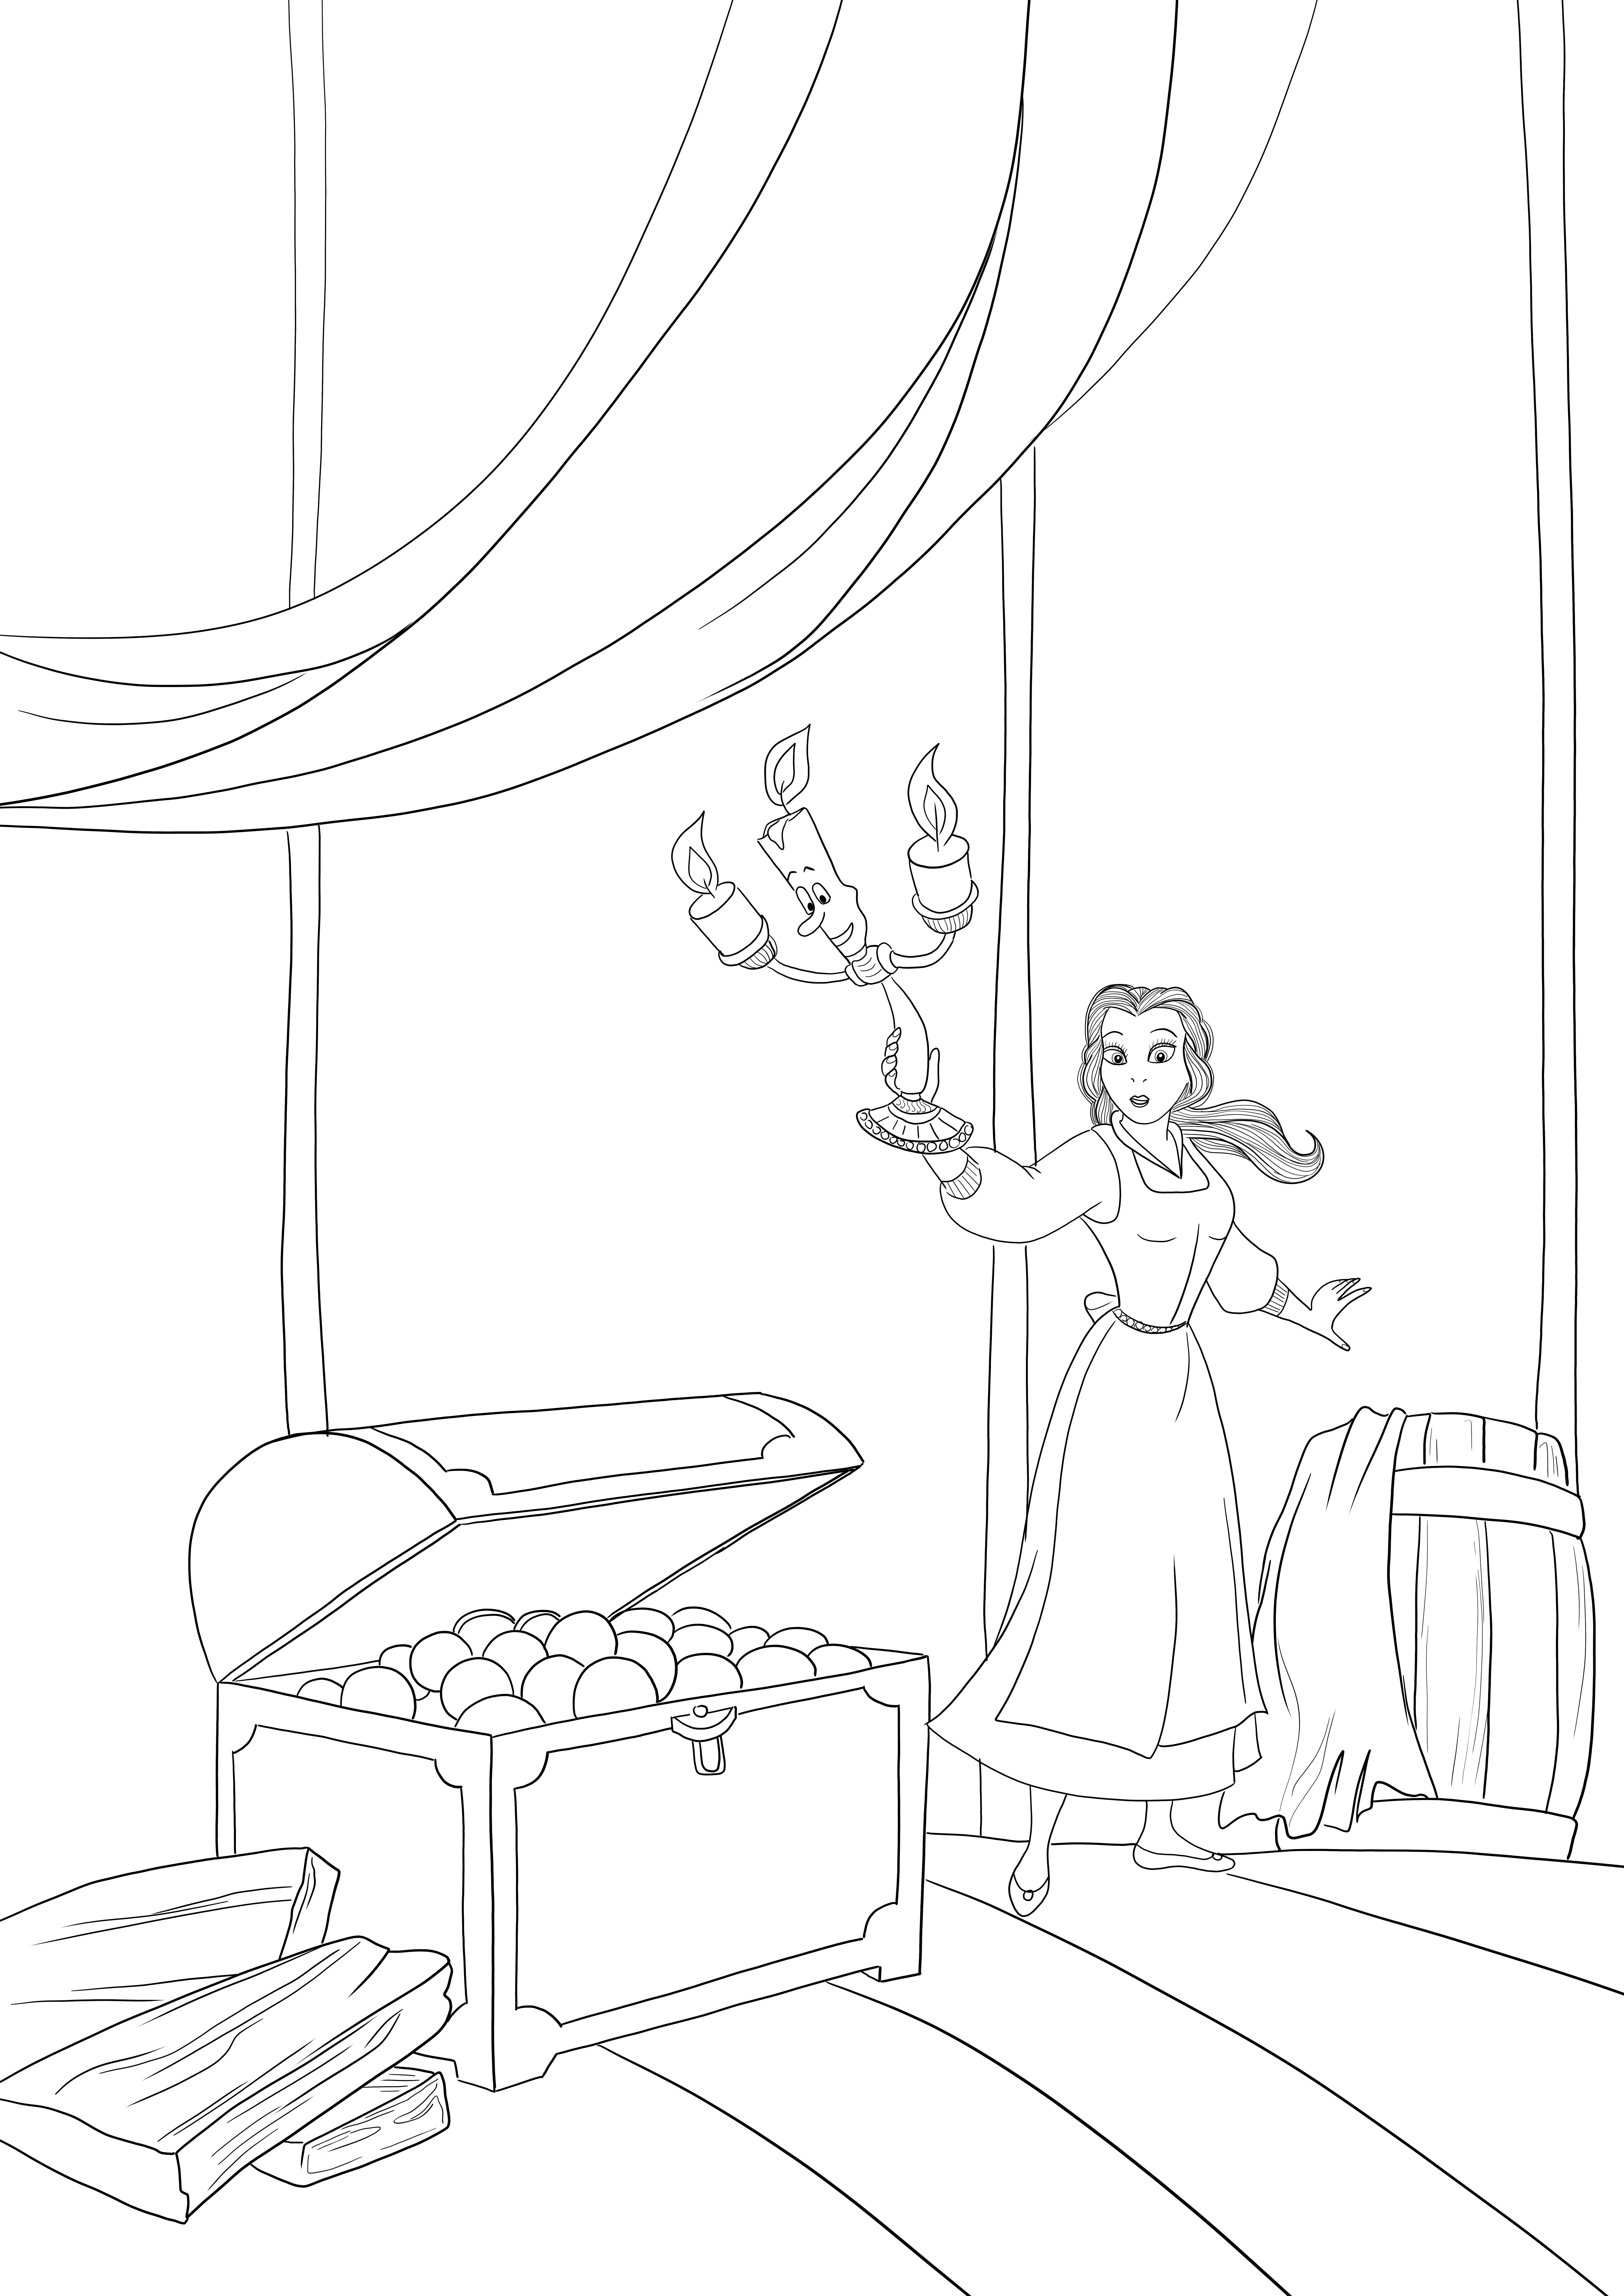 Princesa Disney grátis para impressão pronta para colorir Princesa Bela no sótão.